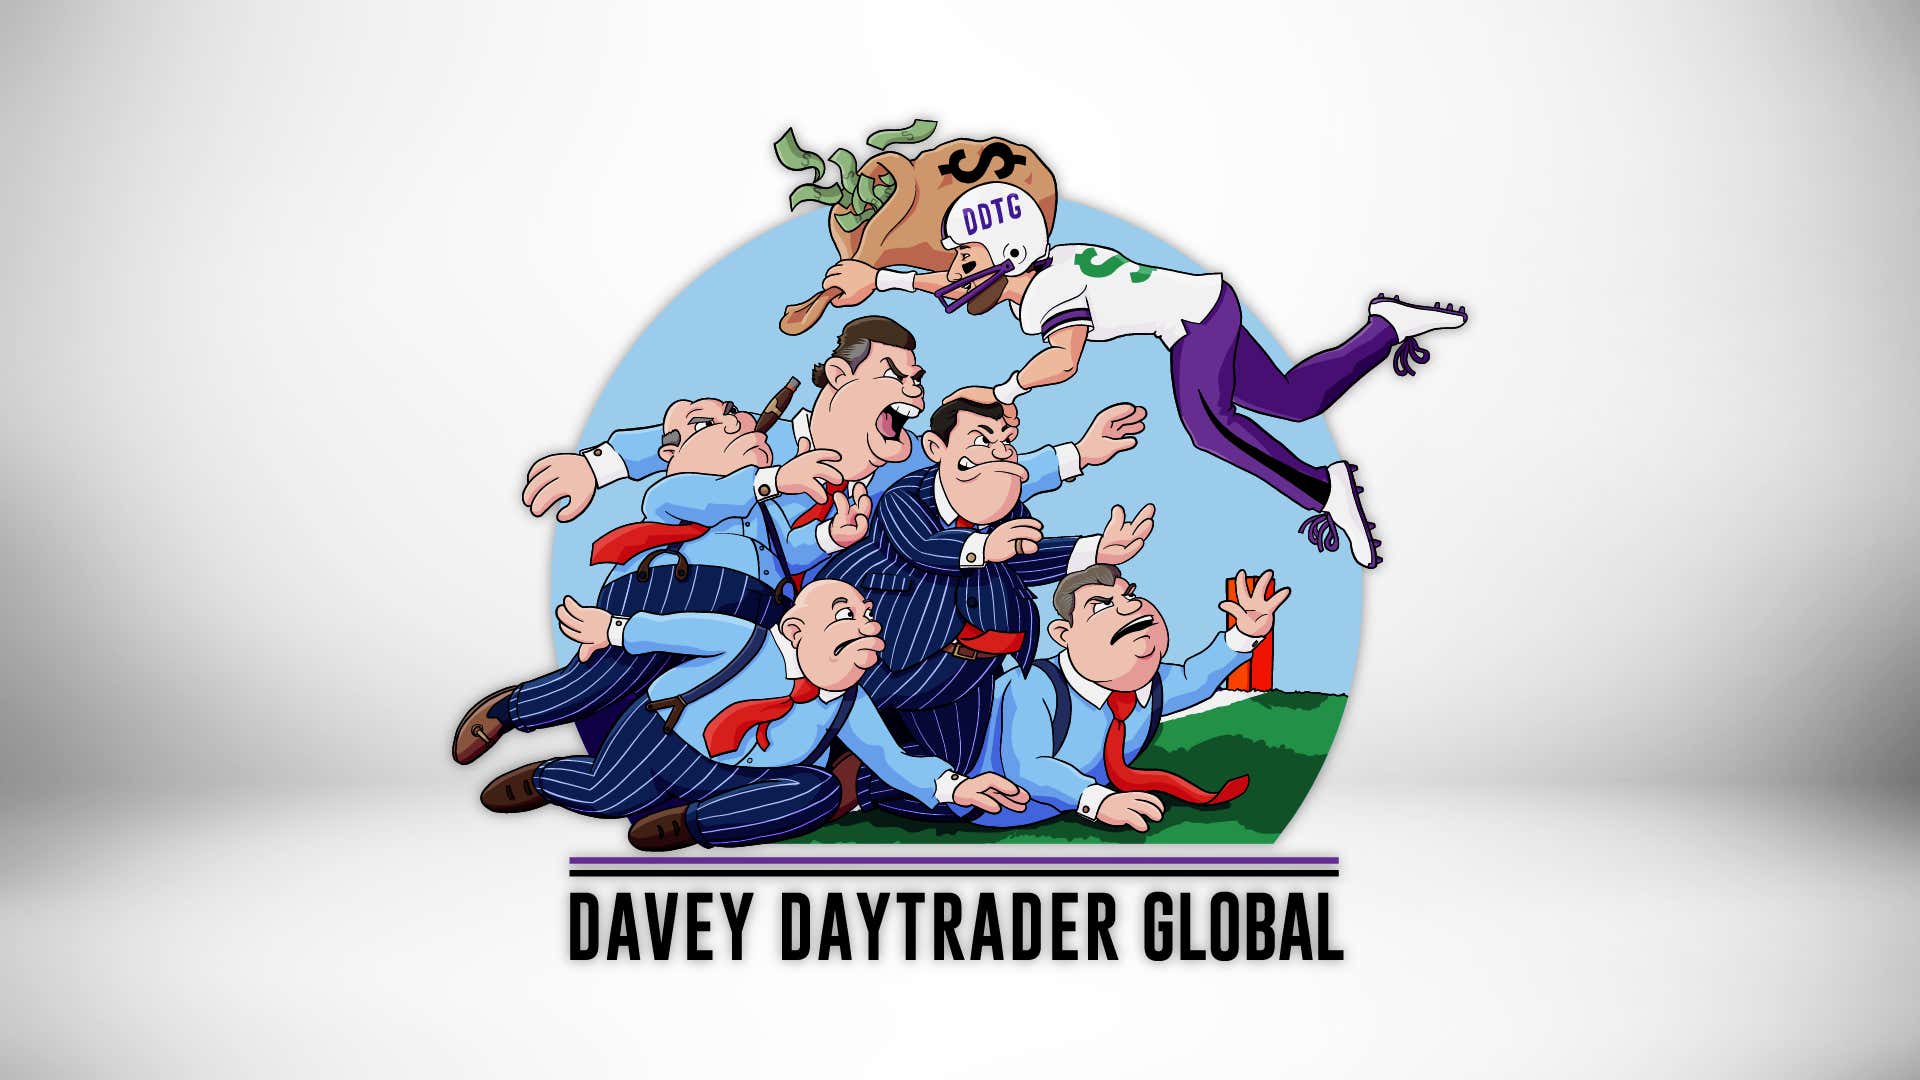 Davey Day Trader – September 21, 2020